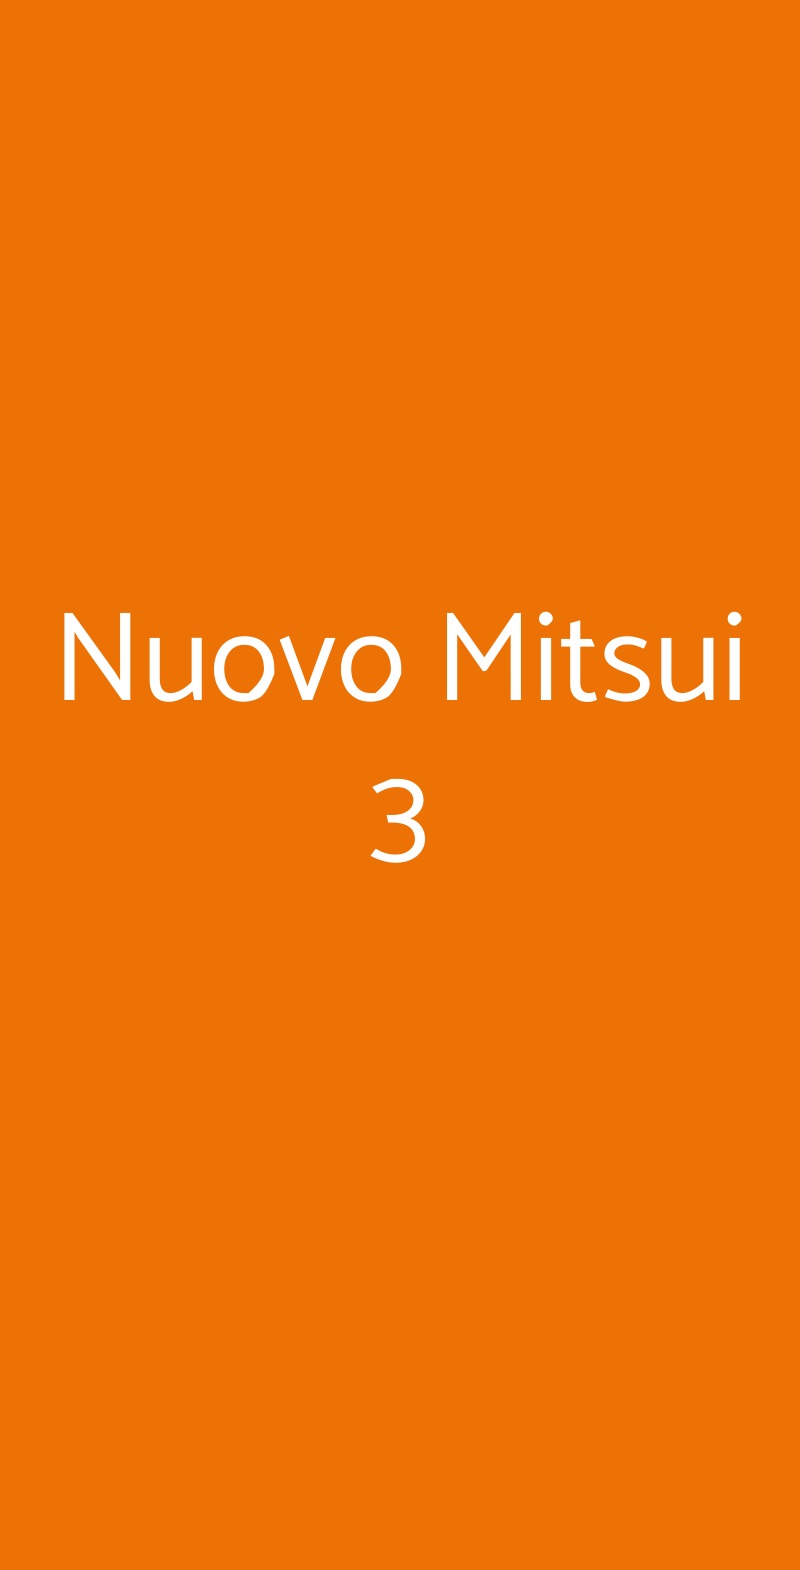 Nuovo Mitsui 3 Milano menù 1 pagina